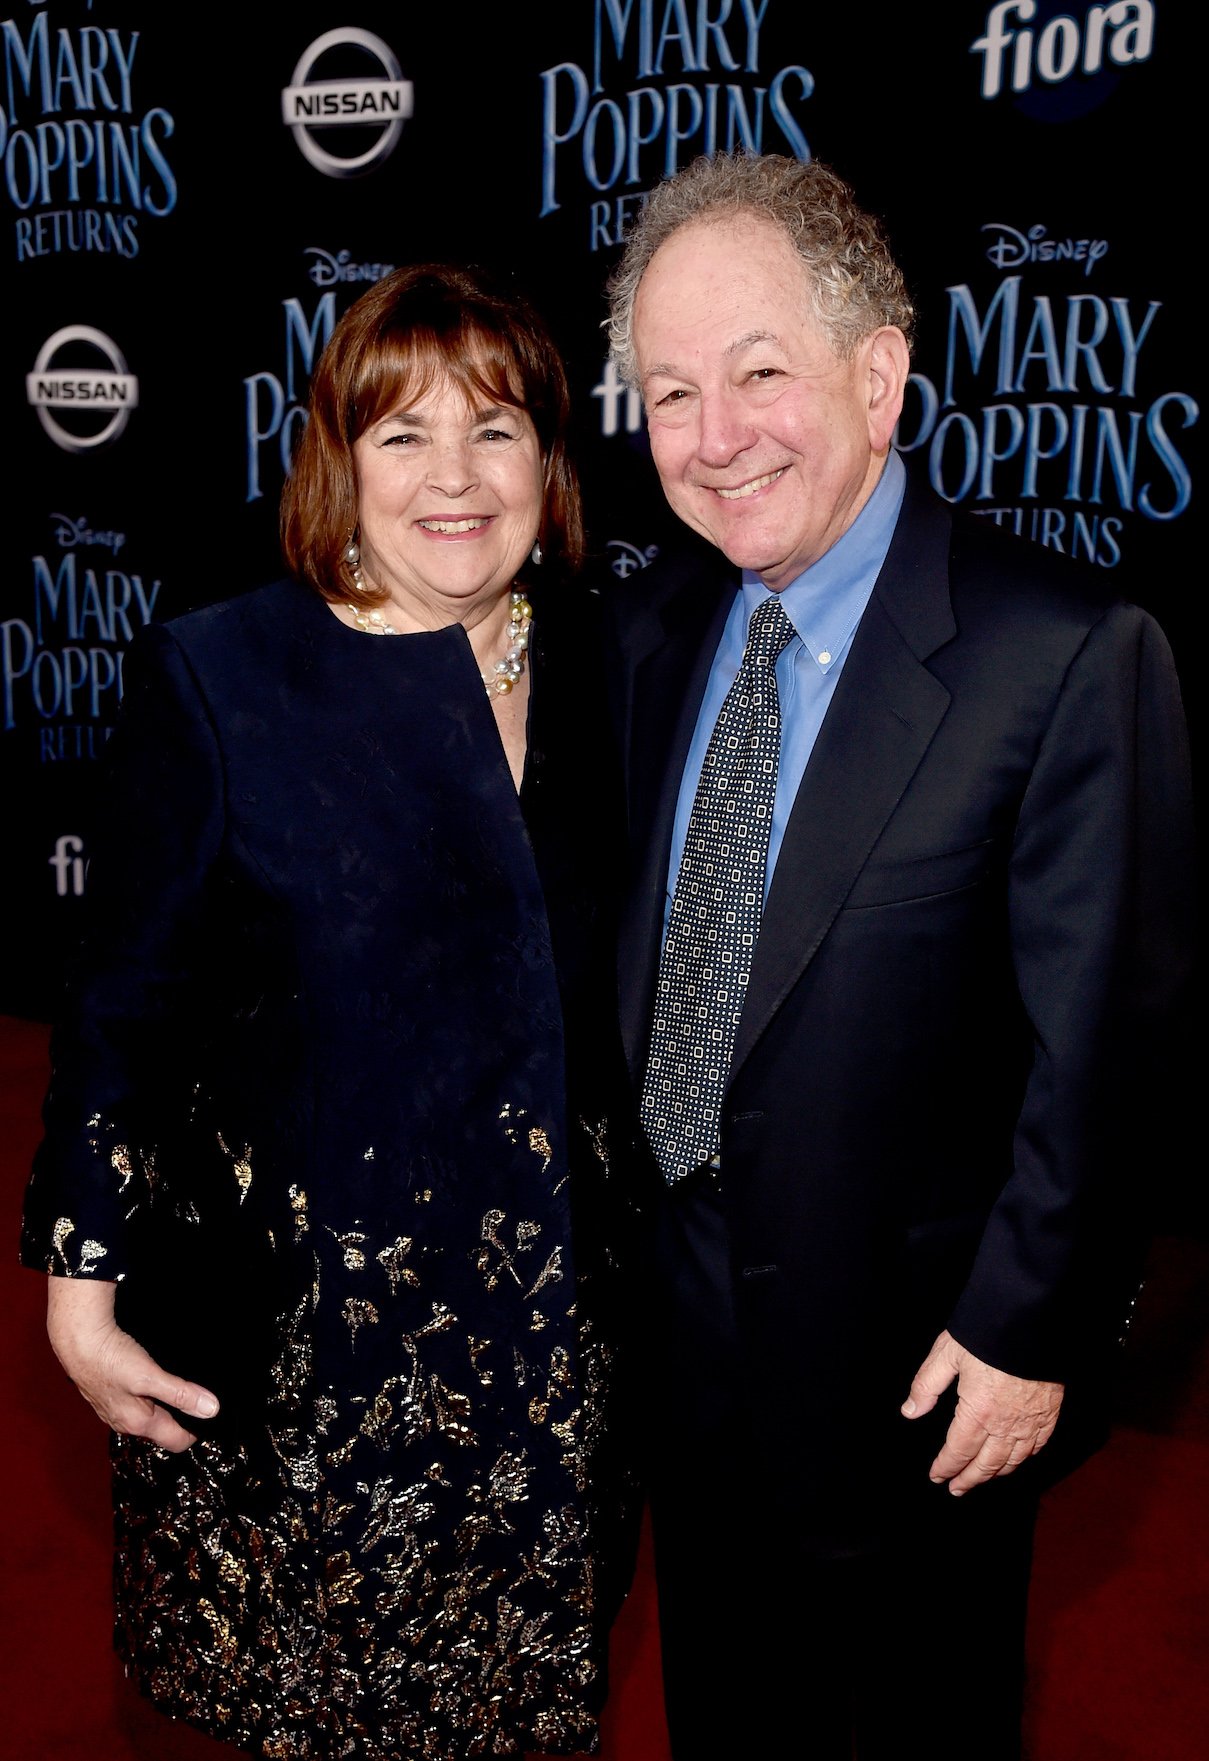 Ina Garten and Jeffrey Garten attend the premiere of 'Mary Poppins Returns'